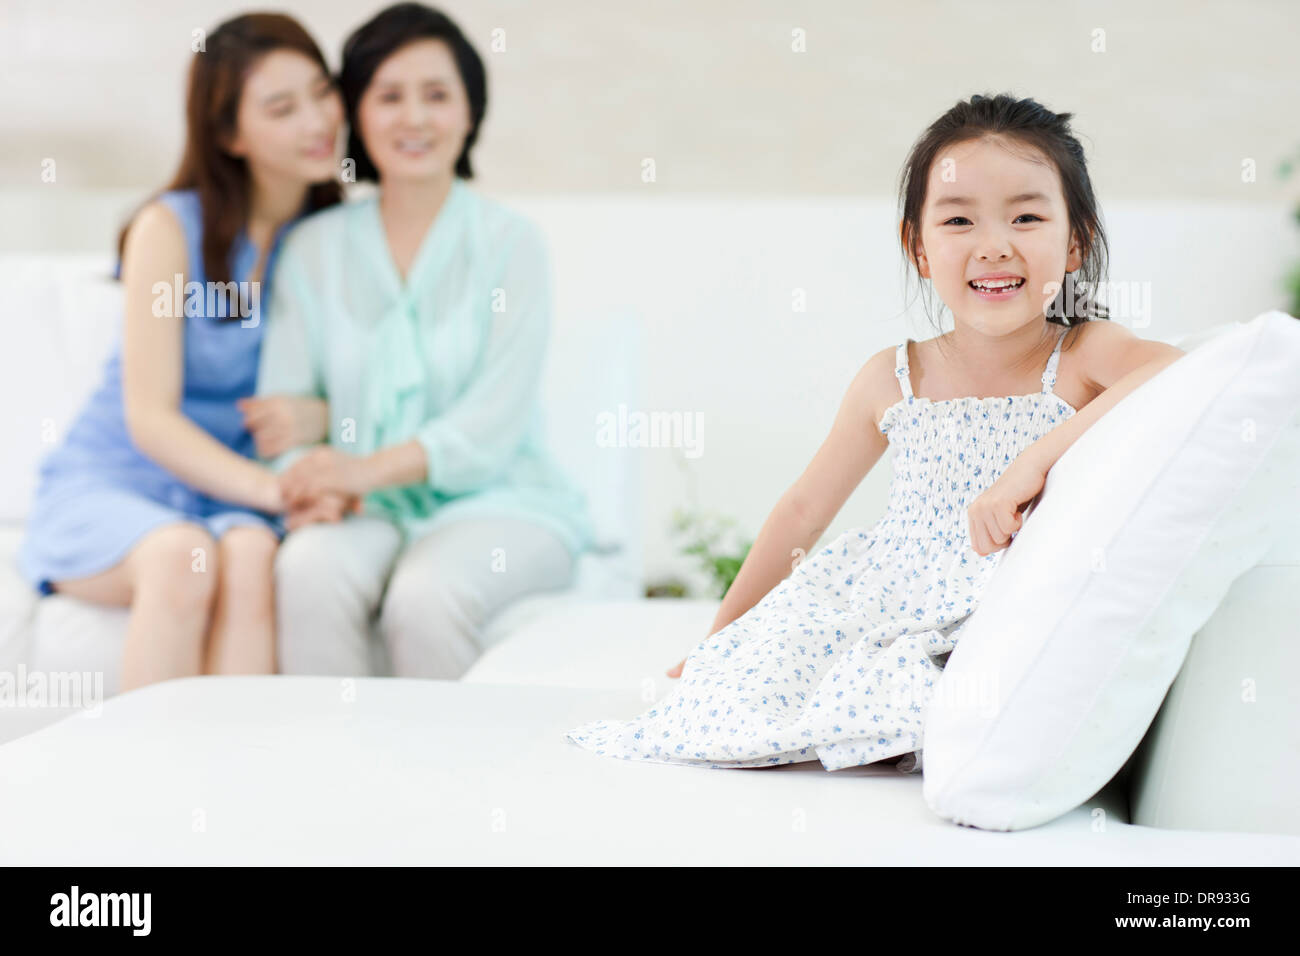 eine Frau mit Tochter und Enkelin im Zimmer Stockfoto